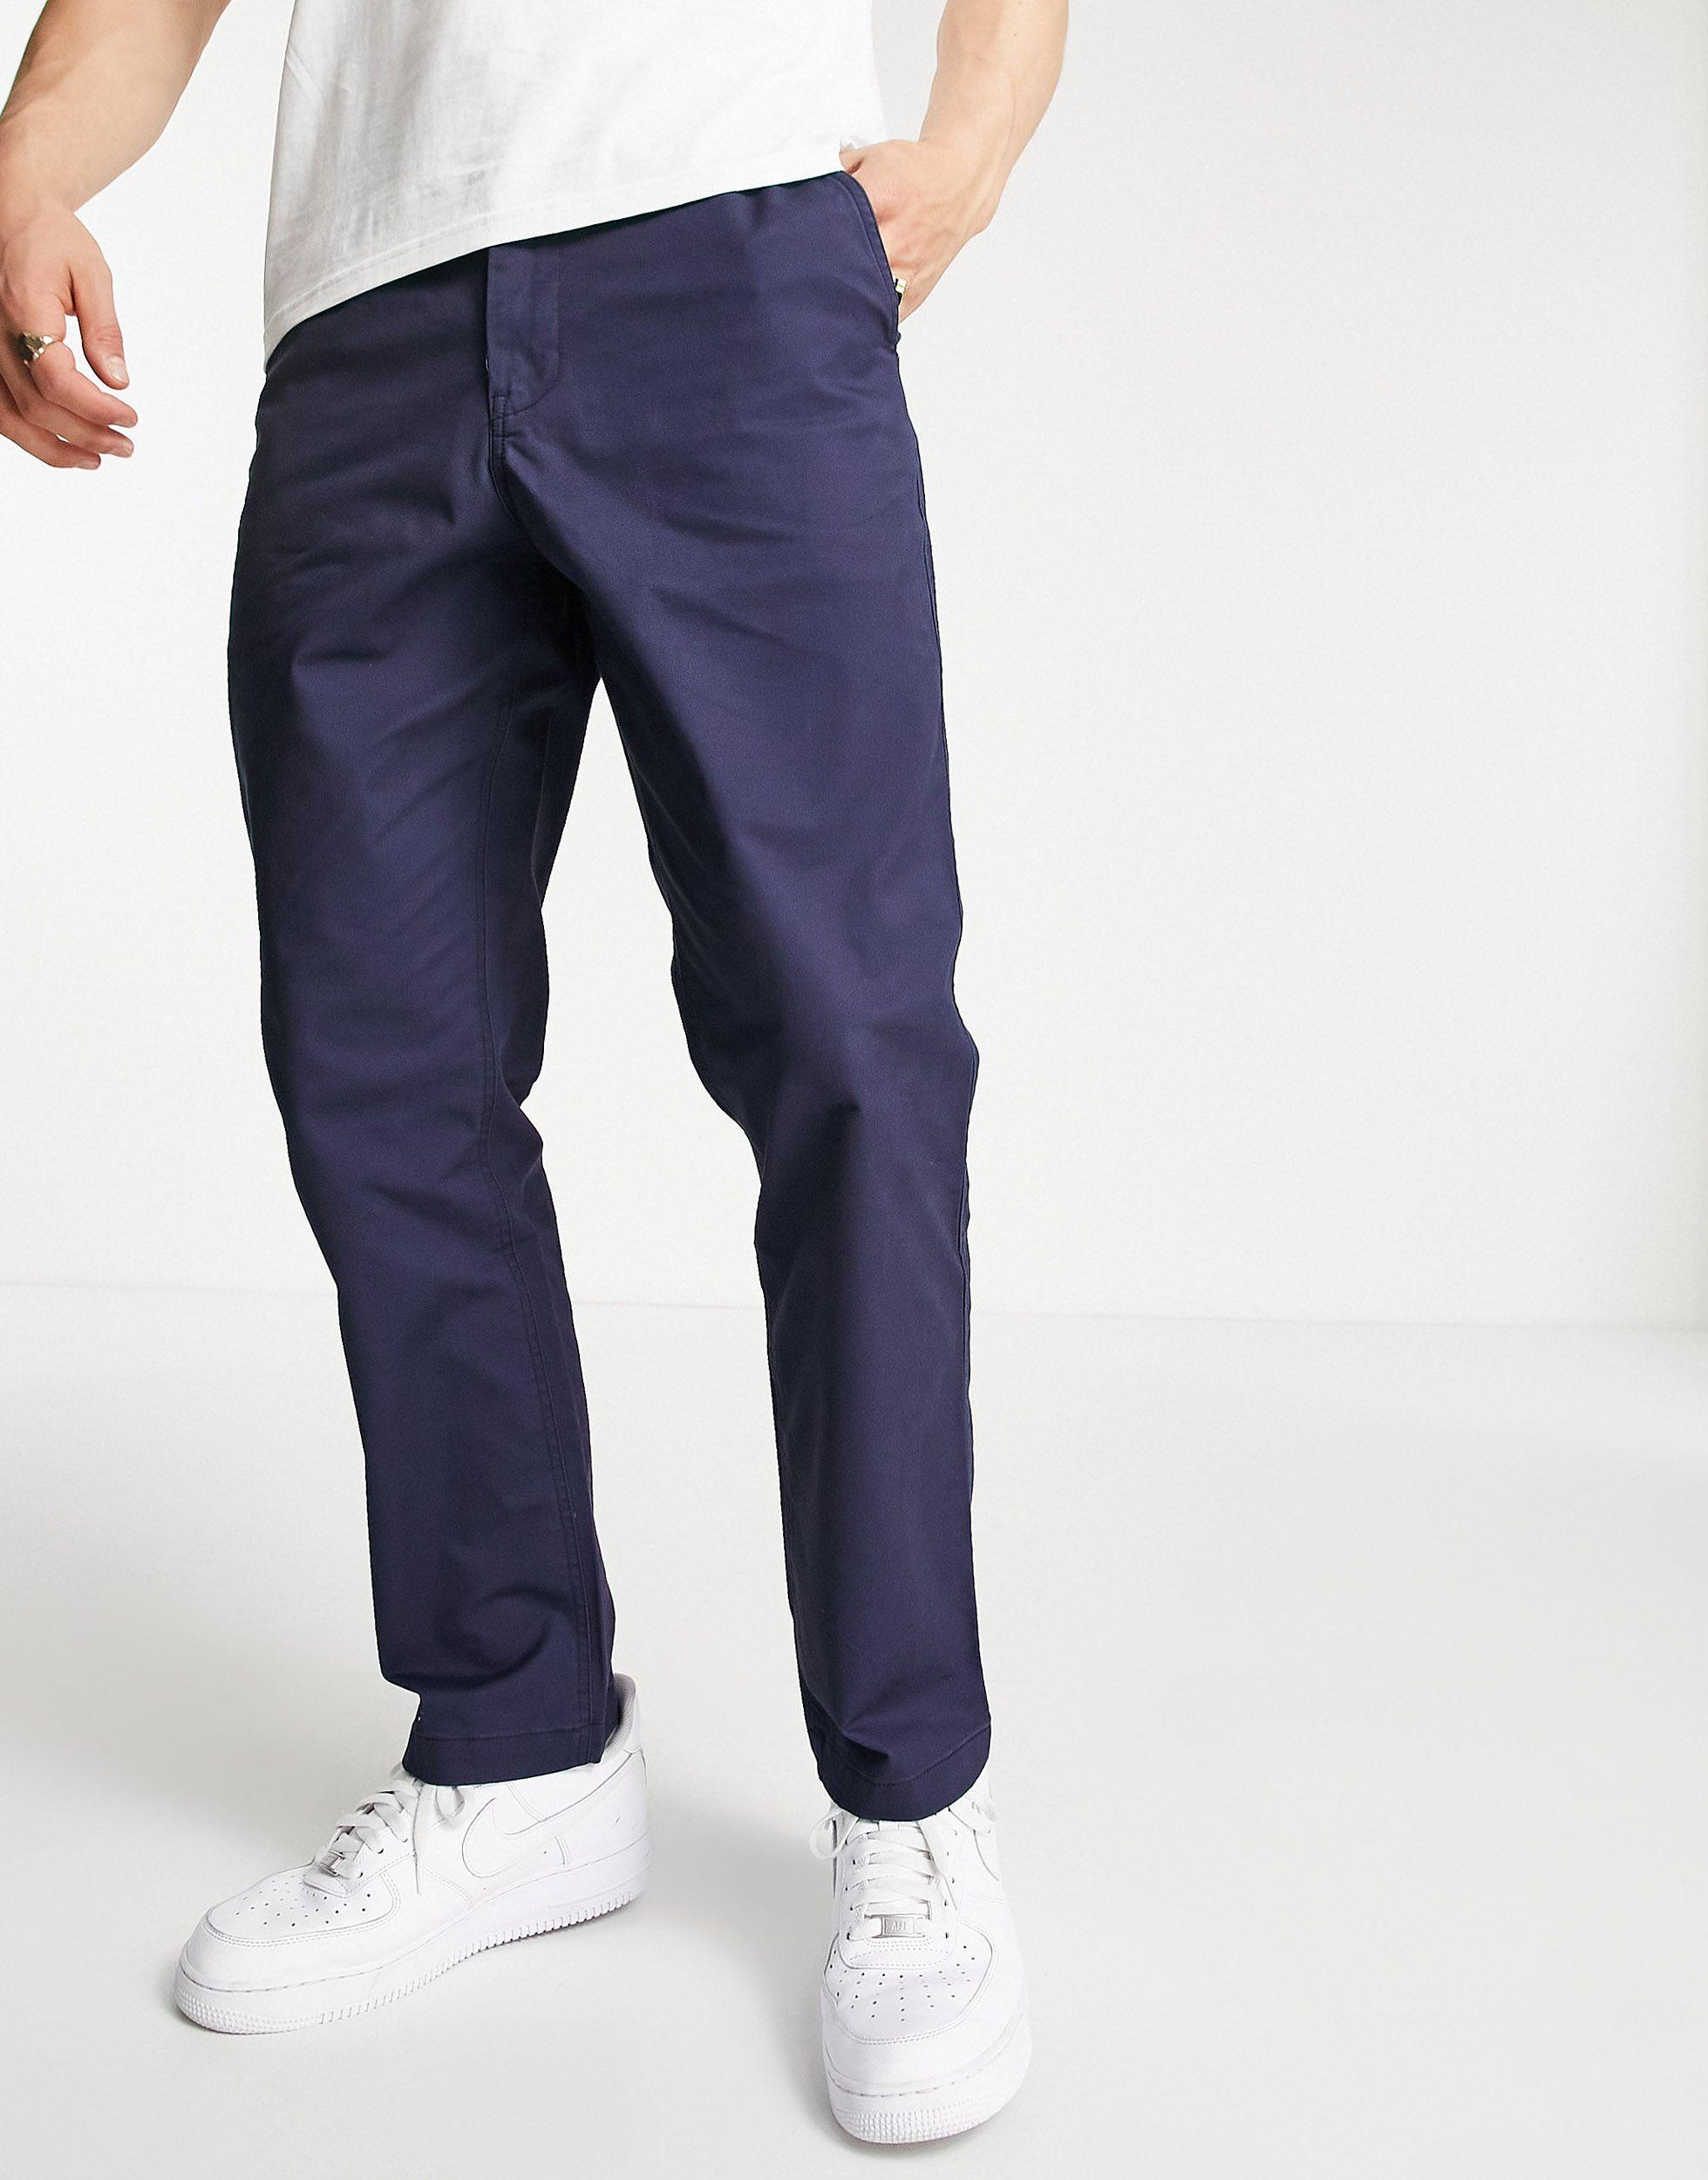 Polo Ralph Lauren Men's Prepster Flat Front Pants Purple